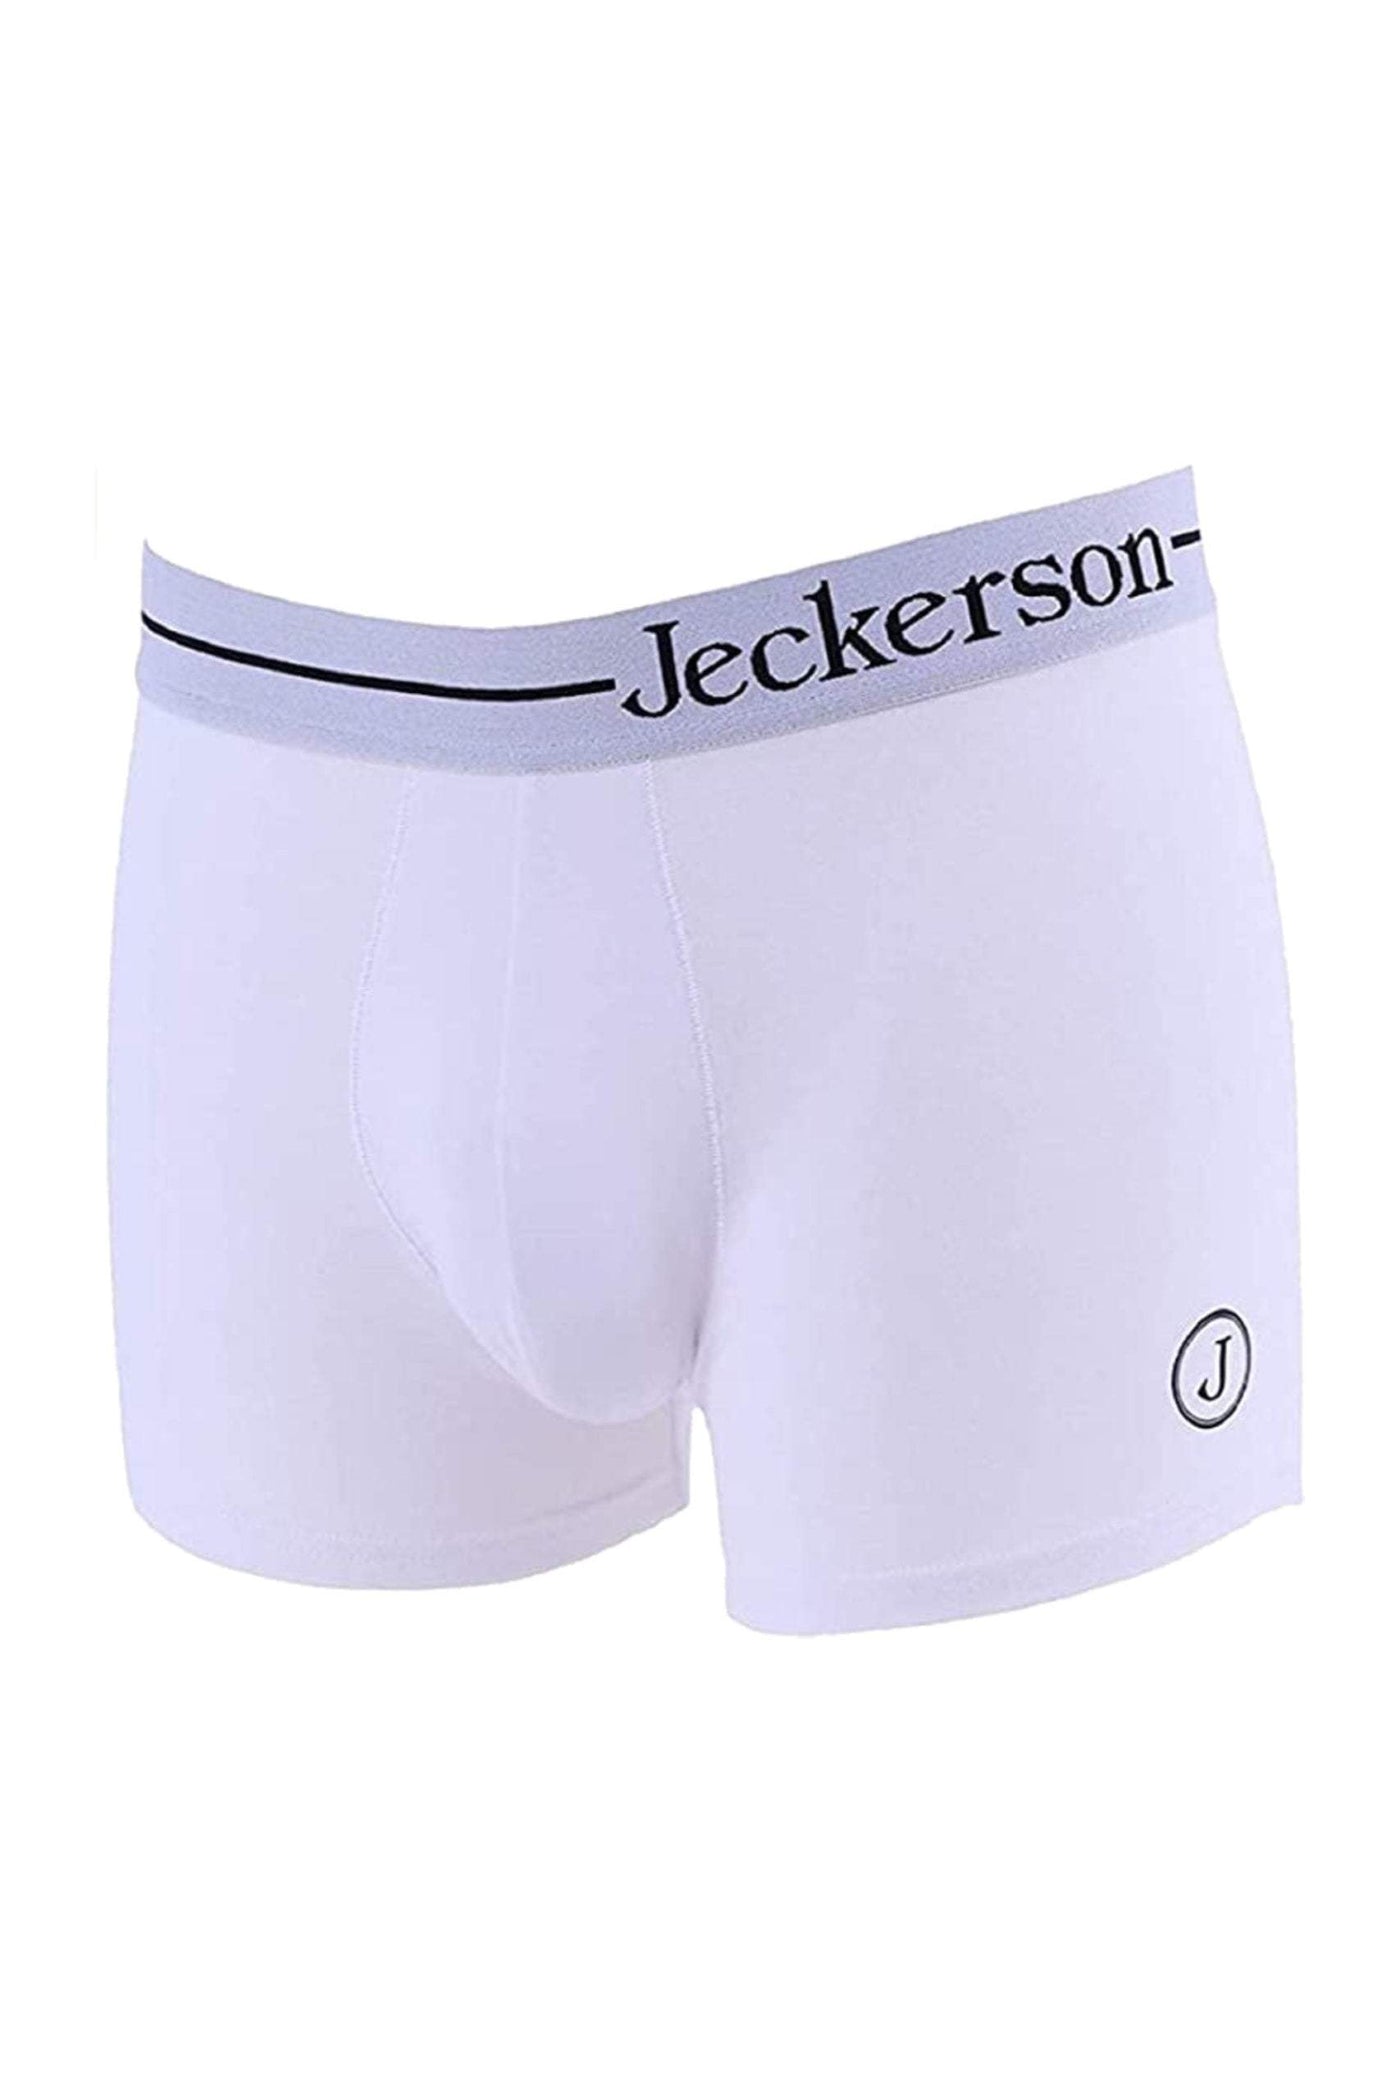 Jeckerson White Cotton Underwear #men, feed-1, Jeckerson, L, M, Underwear - Men - Clothing, White, XL, XXL at SEYMAYKA